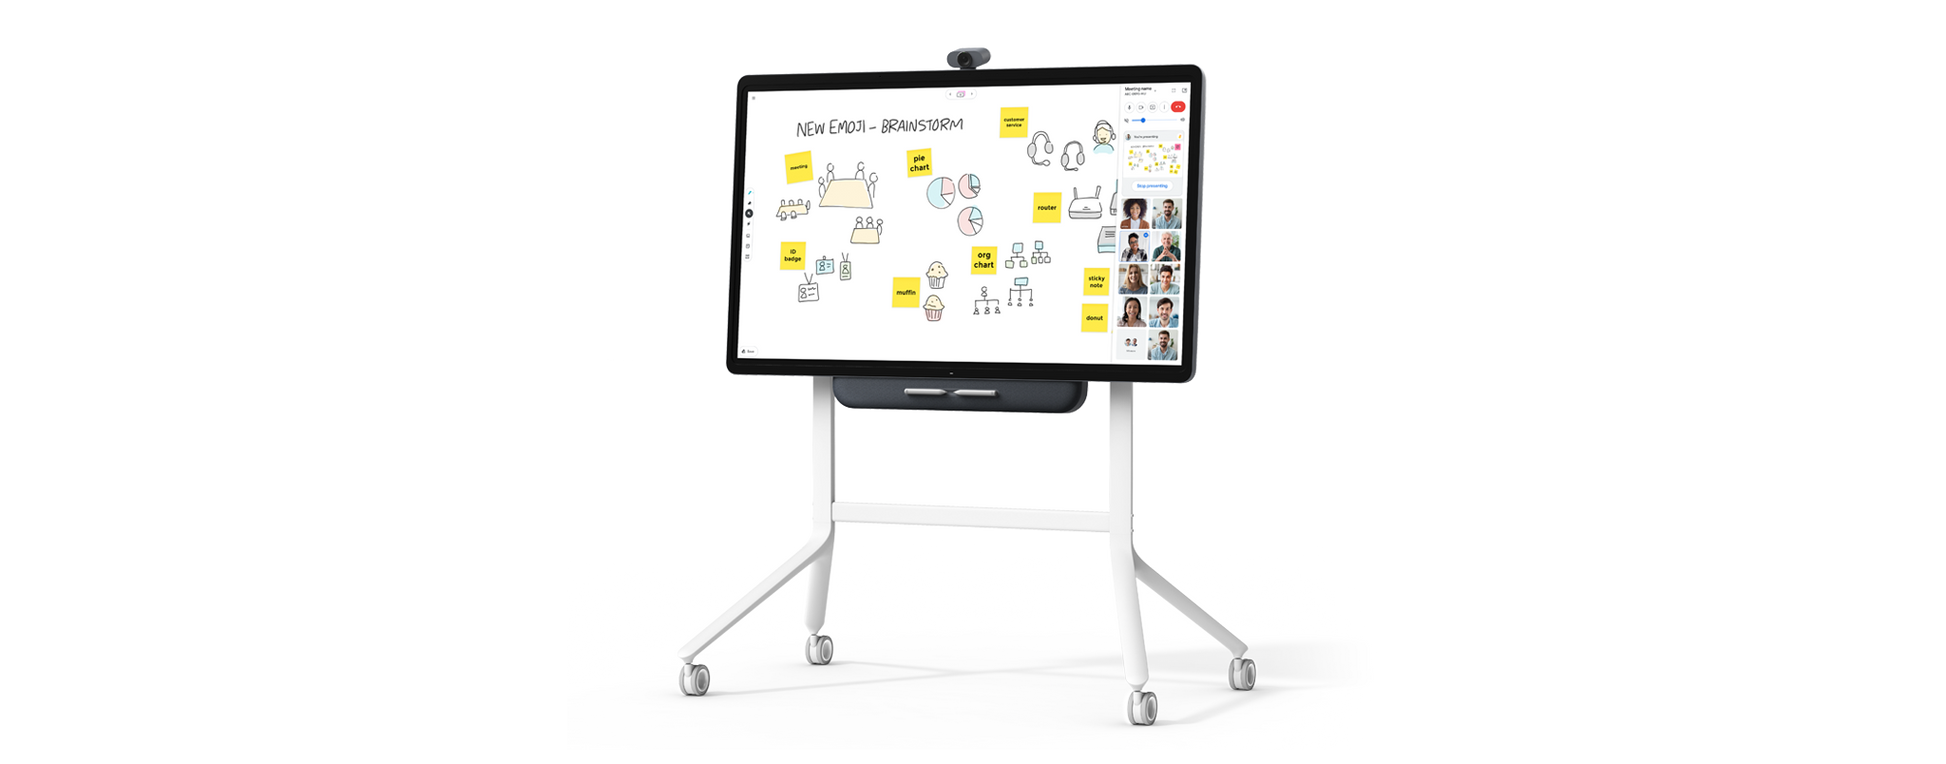 Series One board 65 Inch met rolstandaard visualisatie brainstorm